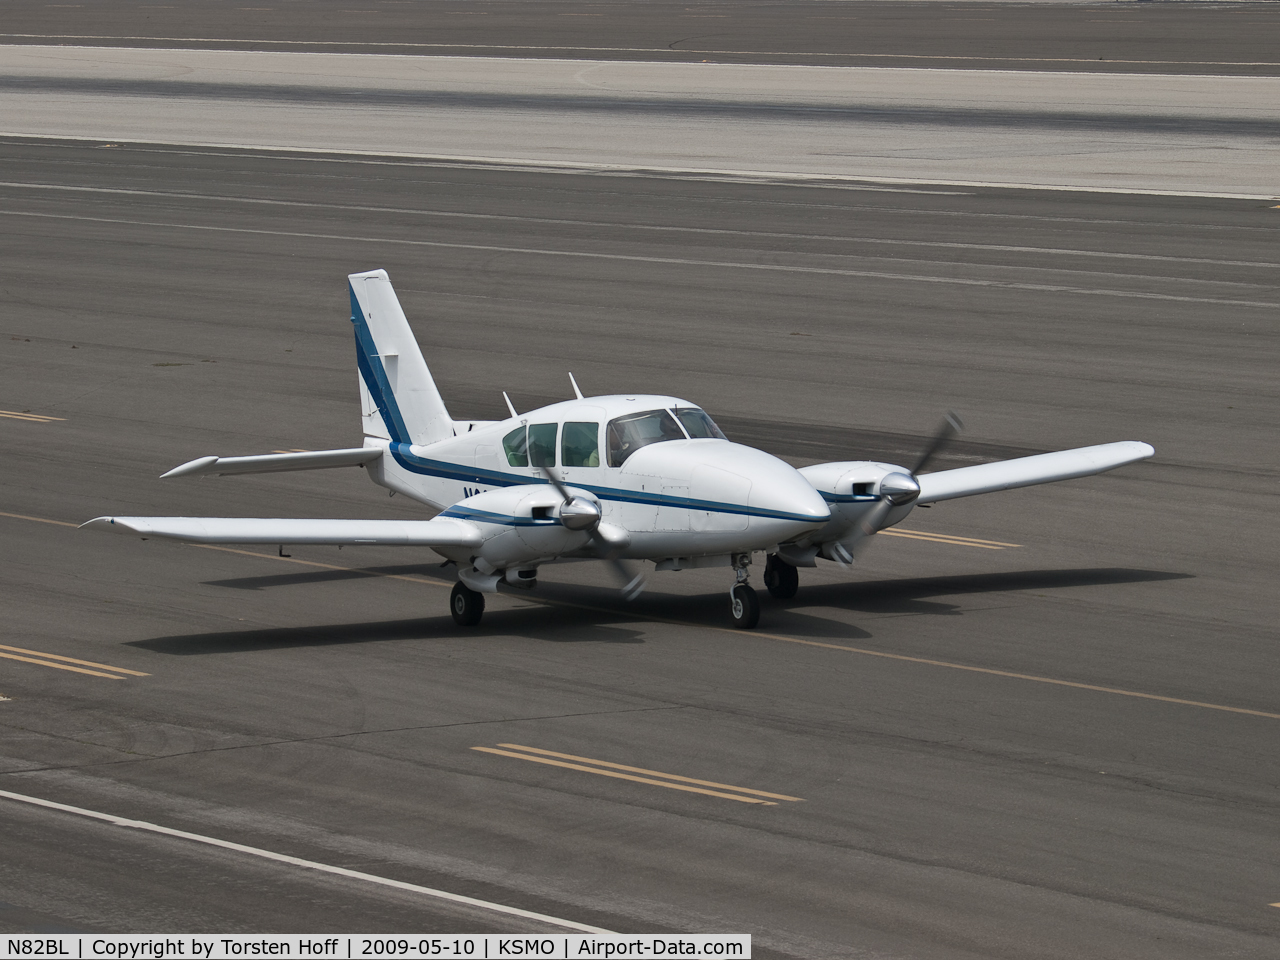 N82BL, Piper PA-23-250 C/N 27-7754049, N82BL taxiing